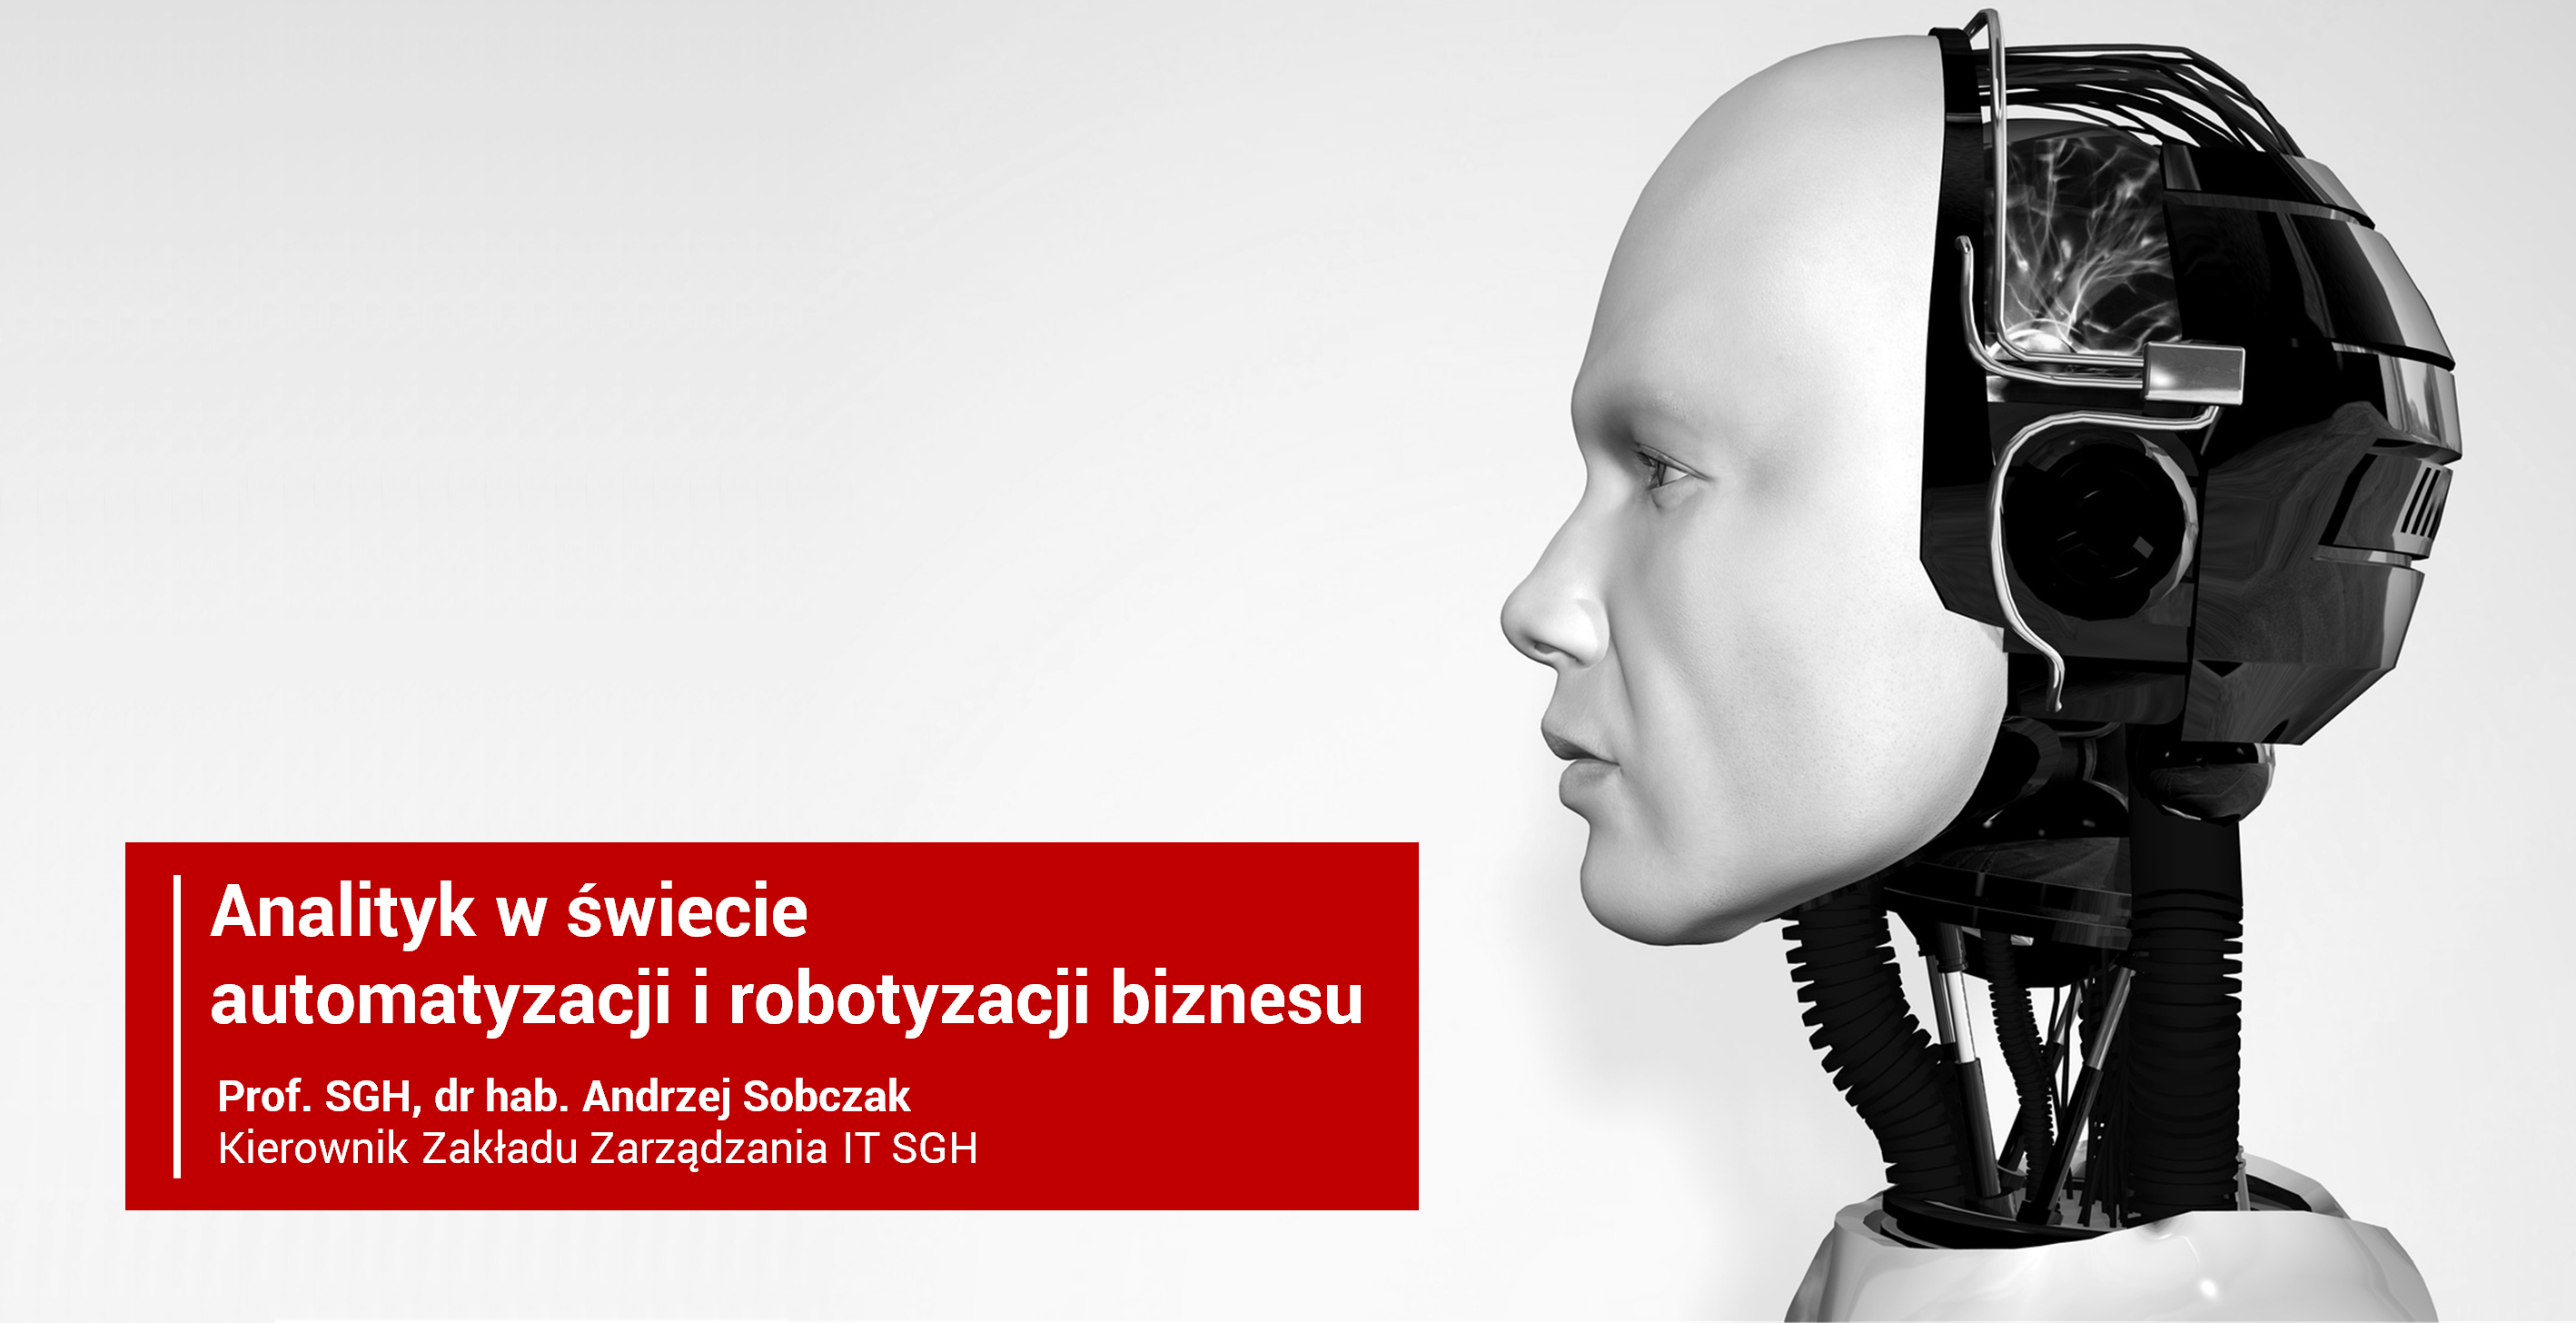 Analityk w świecie automatyzacji i robotyzacji biznesu - moja prezentacja z konferencji ReQuest